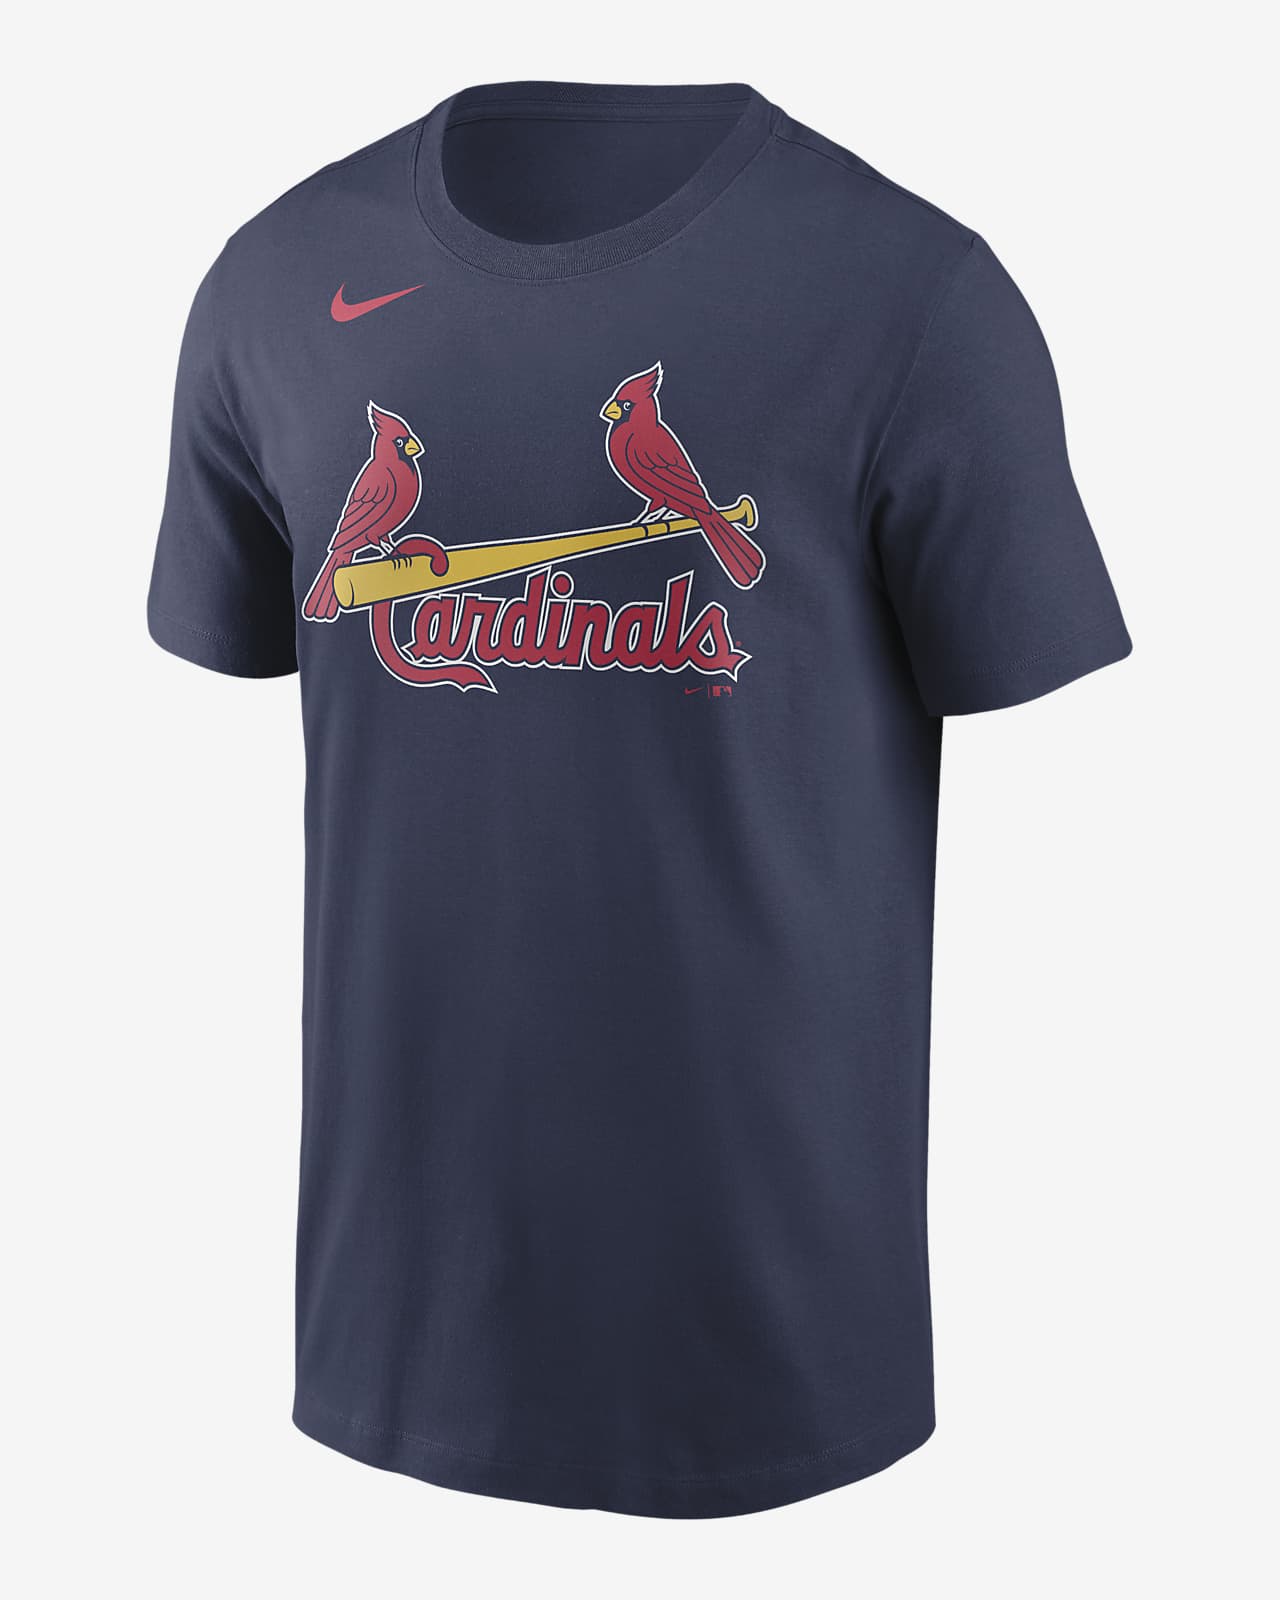 MLB St. Louis Cardinals (Yadier Molina) Men's T-Shirt.